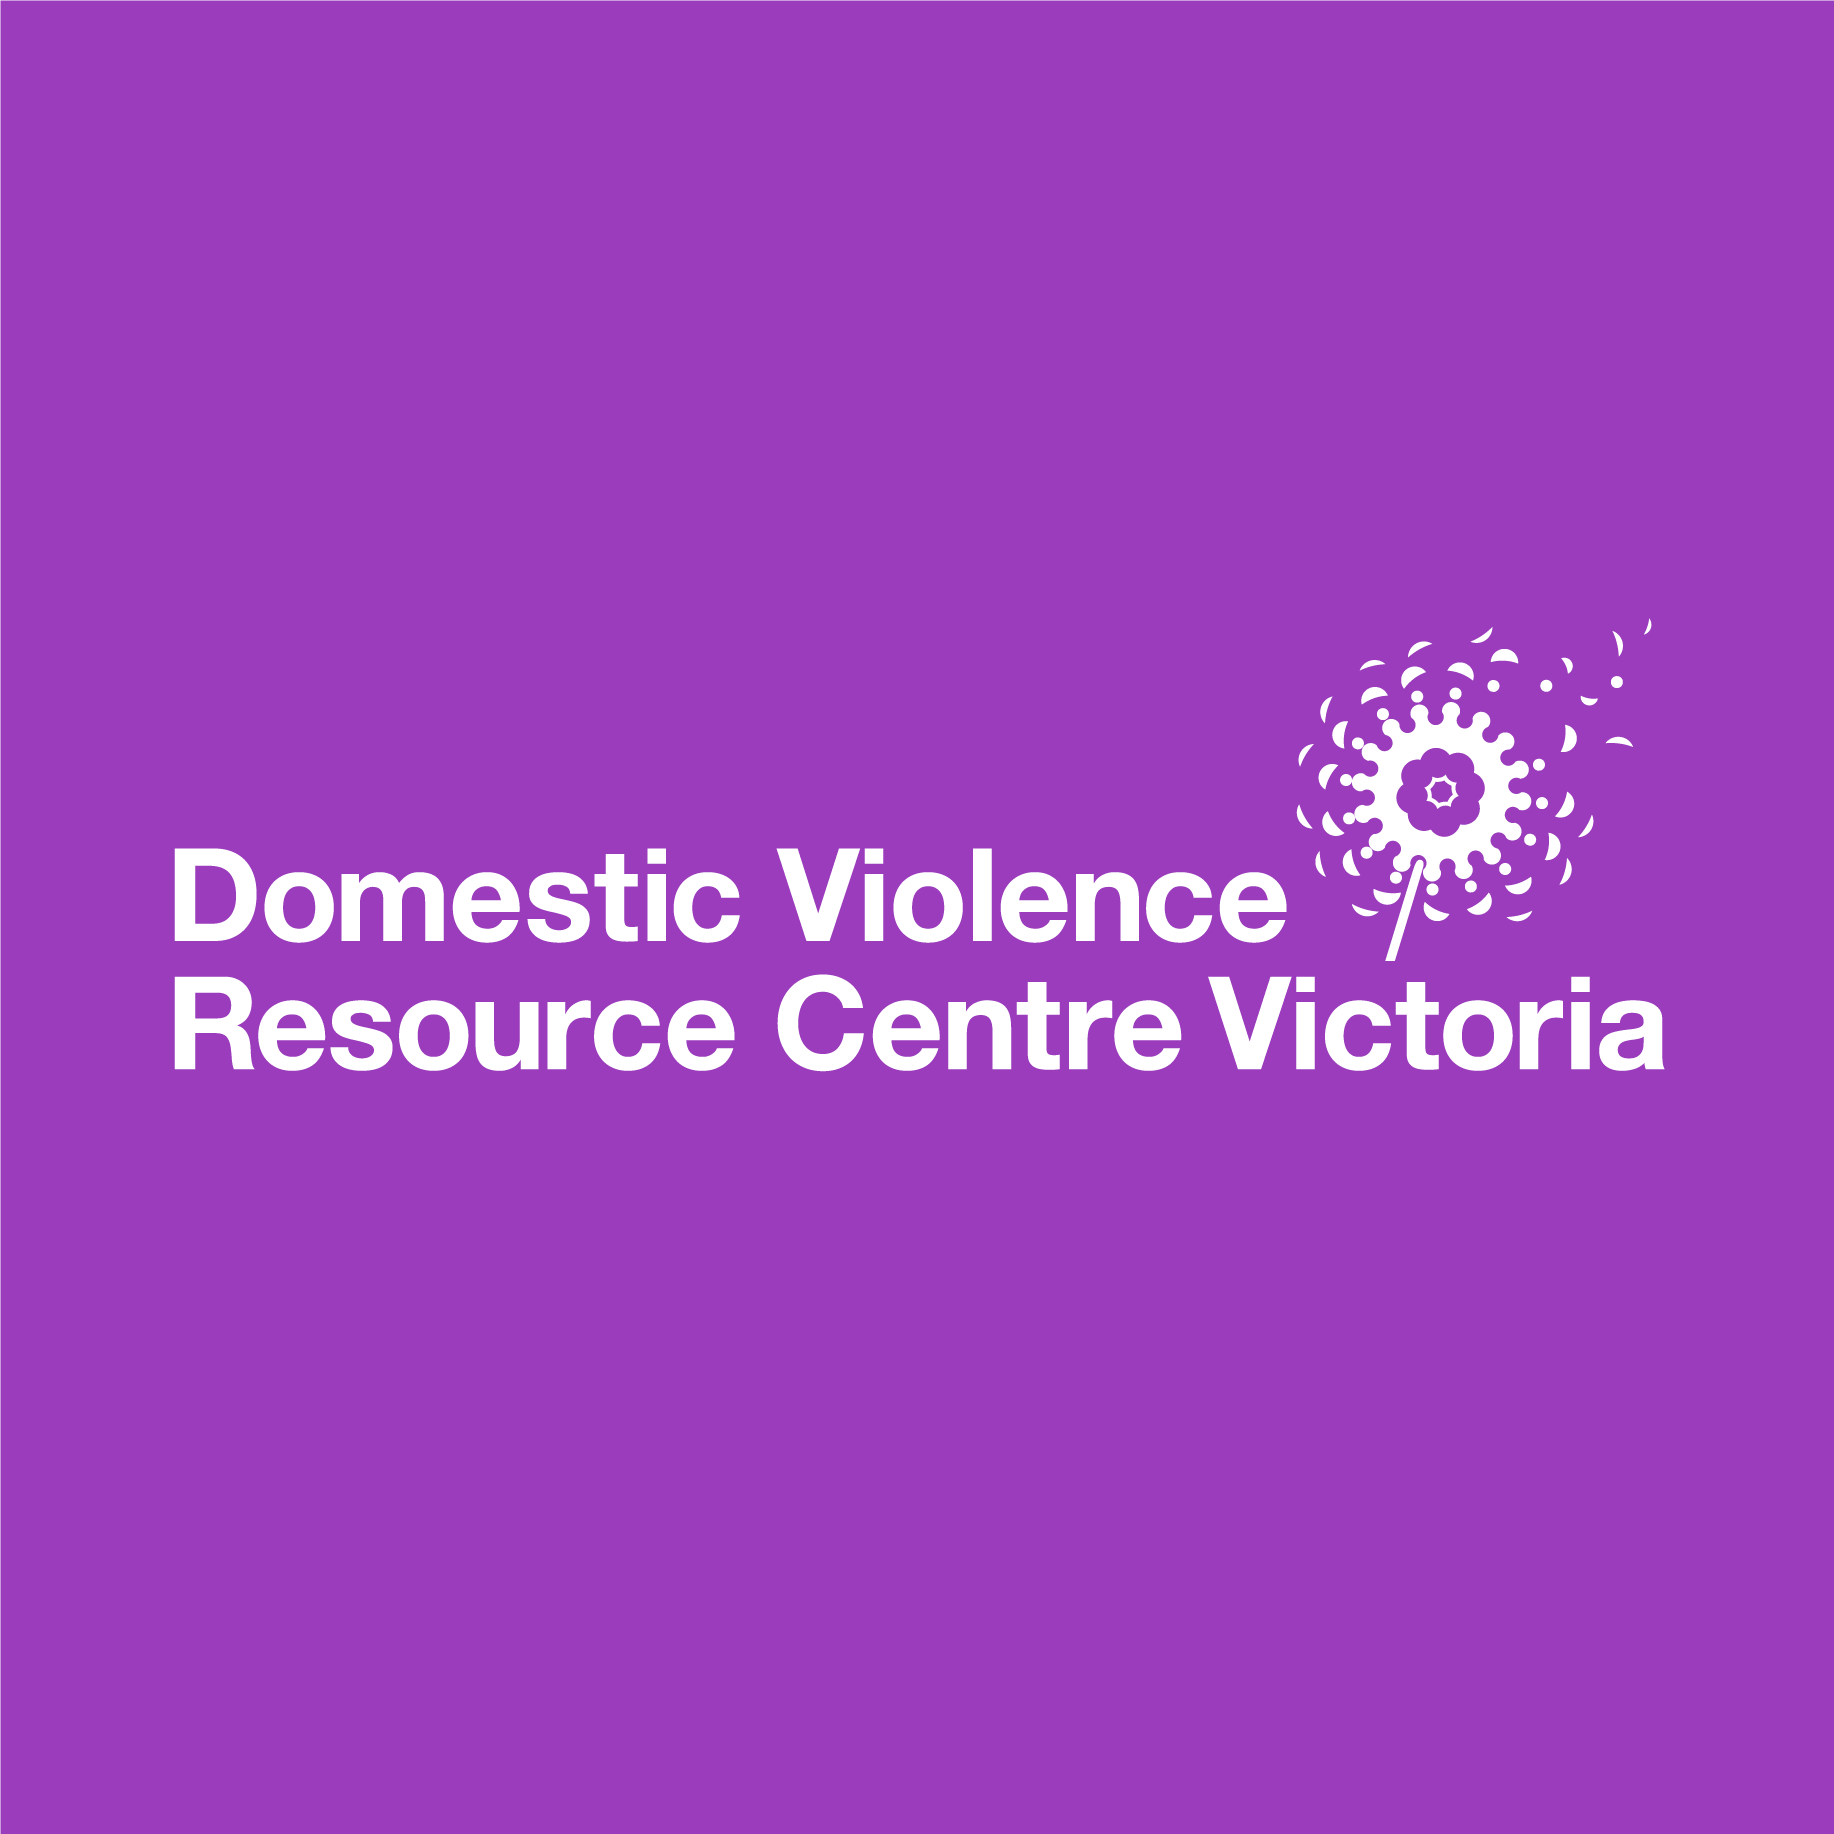 Family violence risk assessment falling short